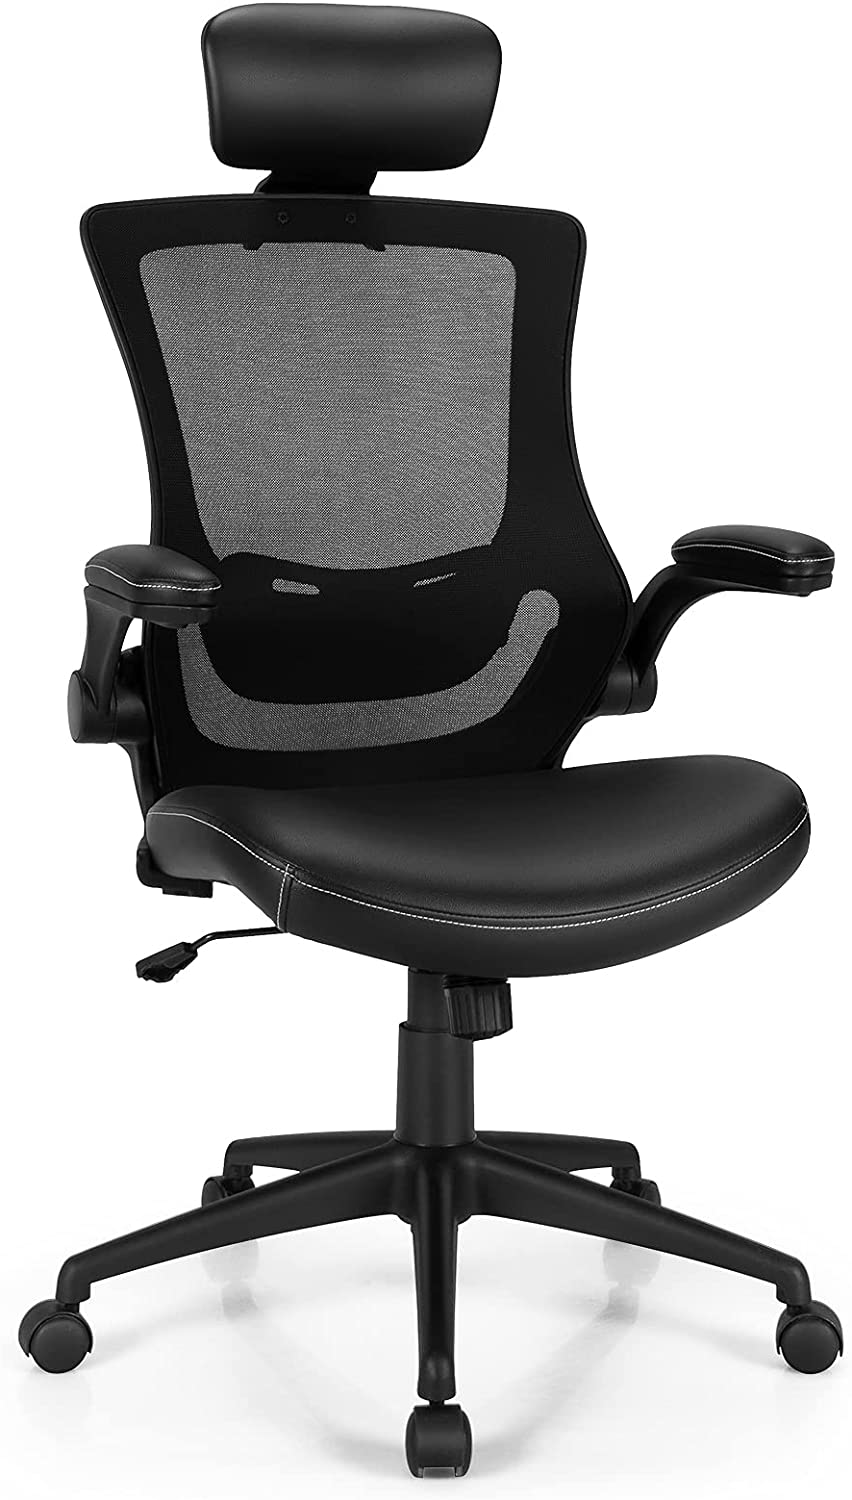 Chaise de bureau ergonomique - Fauteuil - avec accoudoir rabattable à 90° -  Support